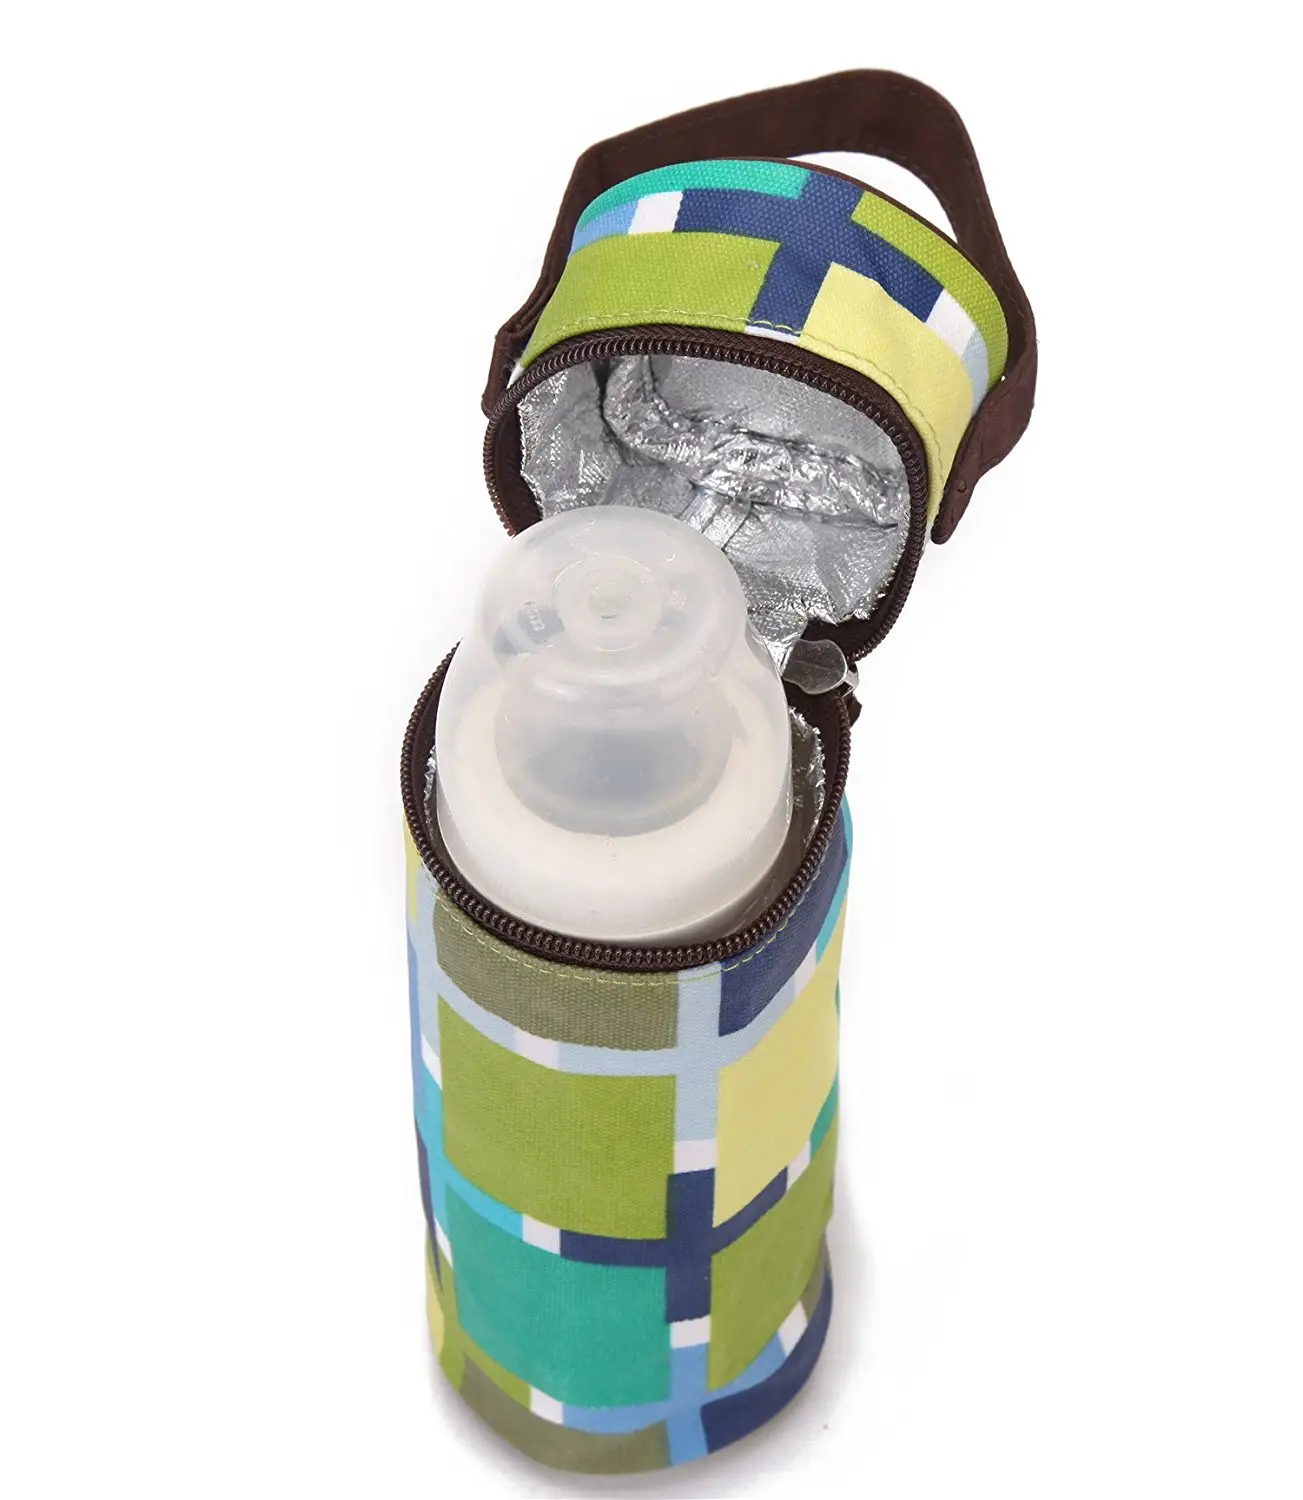 Bolsa personalizada para botellas de leche materna, bolsa de agua caliente, termo aislado, enfriador para biberones